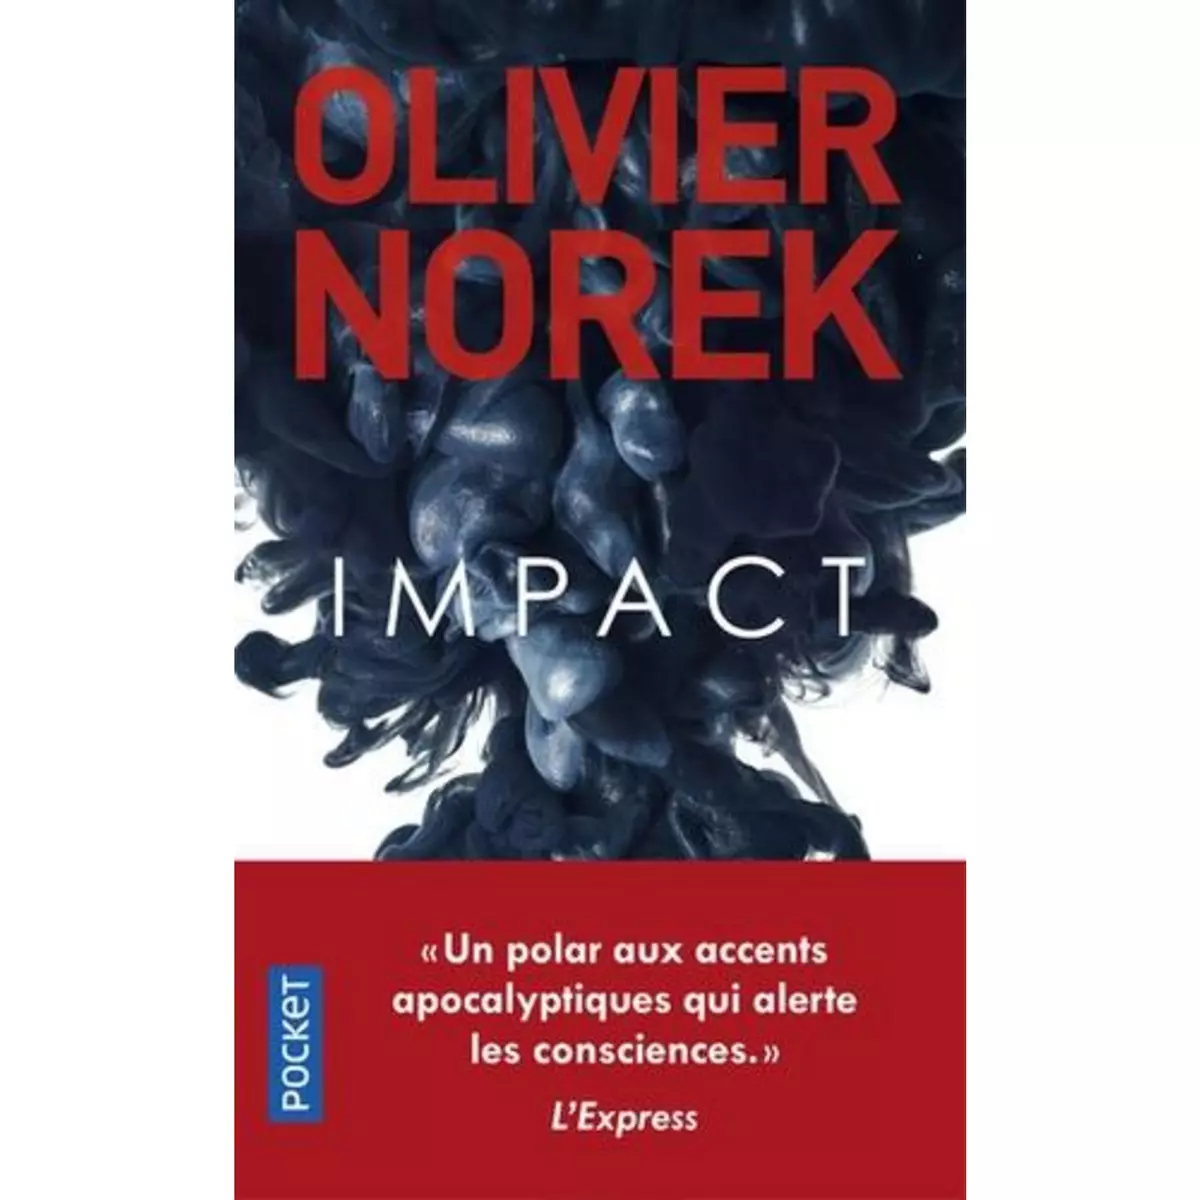  IMPACT, Norek Olivier